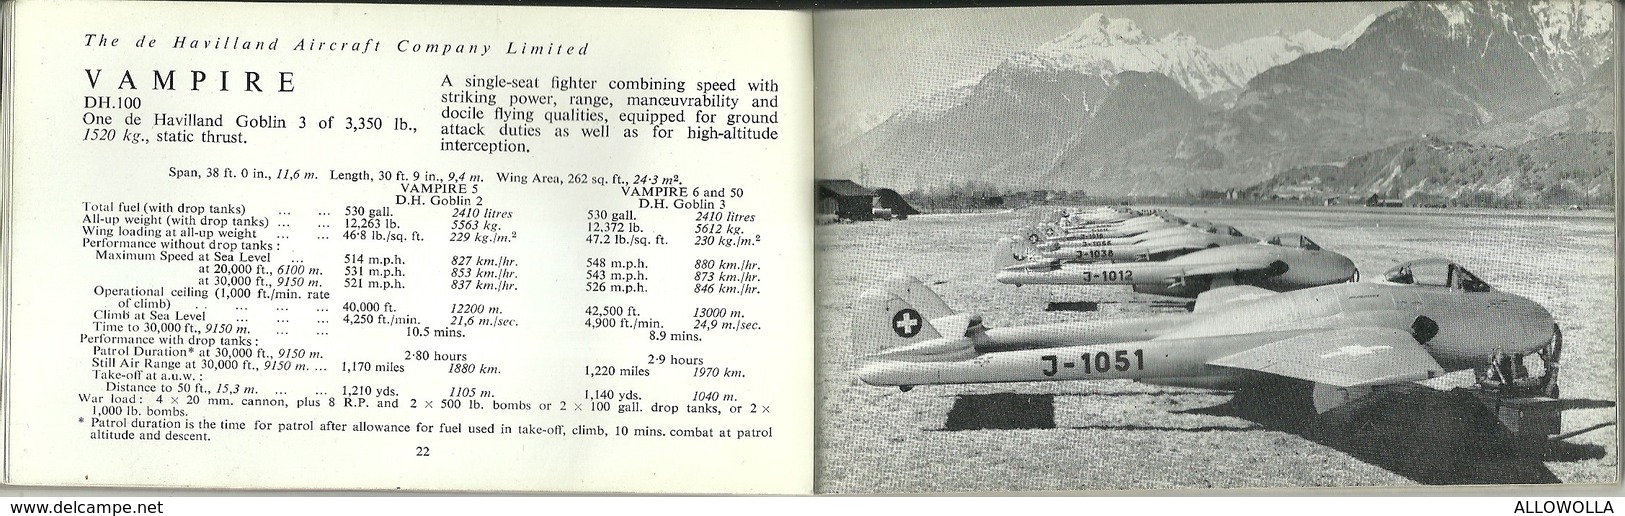 4181 " THE DE HAVILLAND ENTERPRISE-GENERAL INFORMATION BOOKLET N° 12 -AUGUST 1952"ORIGINAL-98 PAGES-DIM.:Cm 8,5 x 14,5